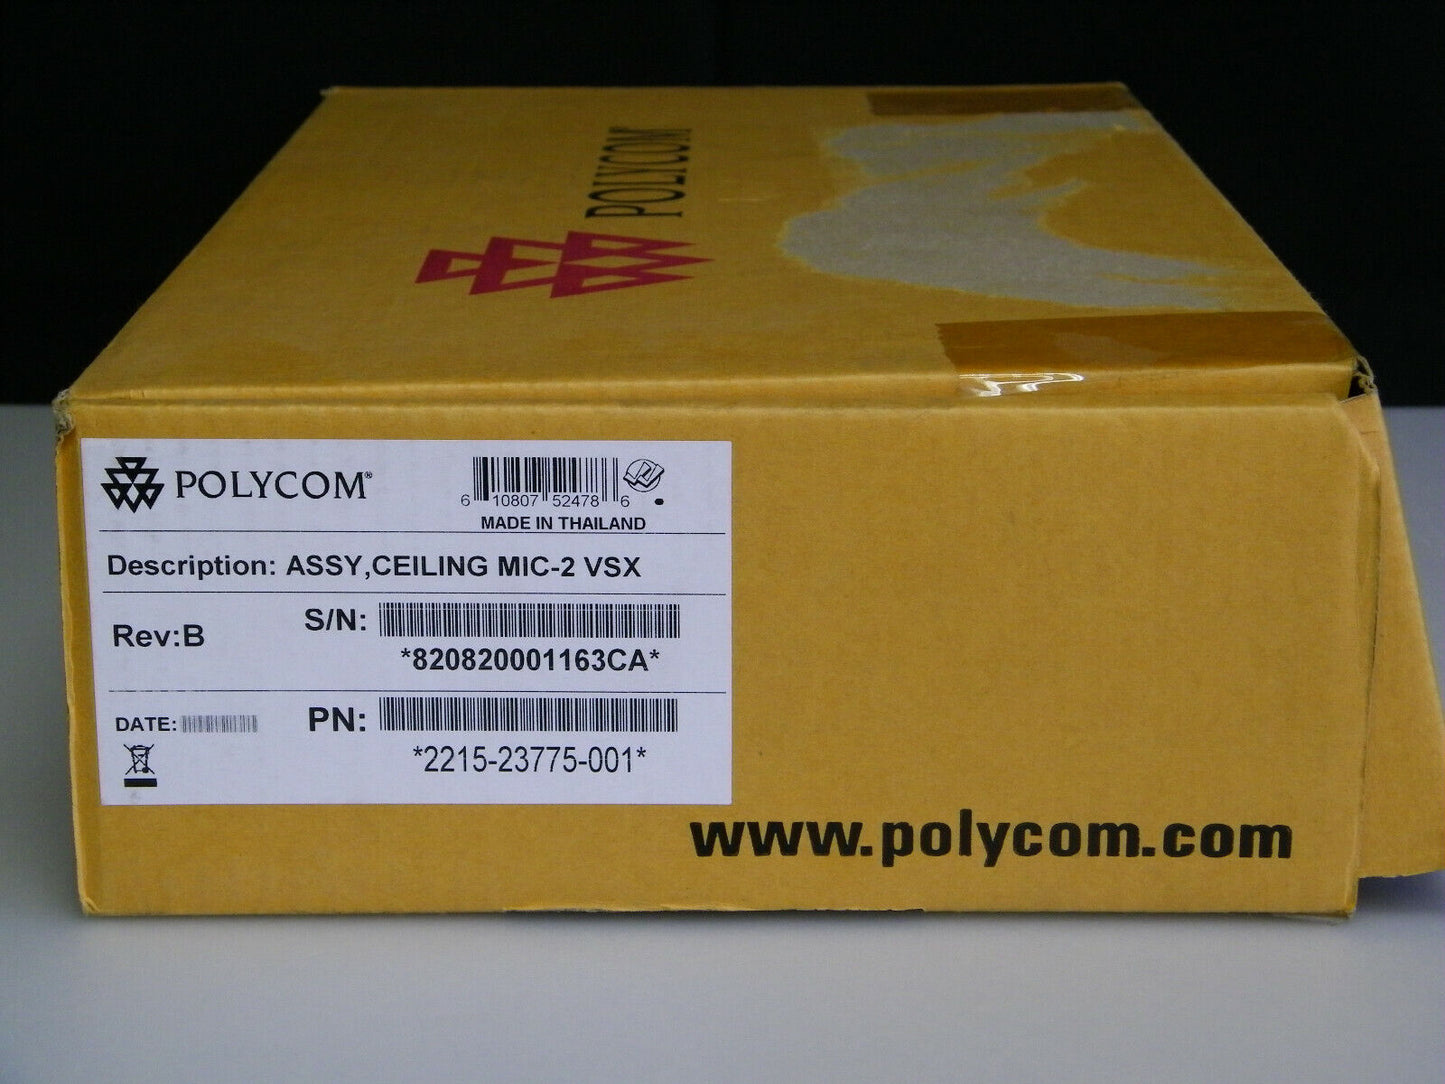 Polycom 2215-23775-001 / Assy, Ceiling MIC-2 VSX